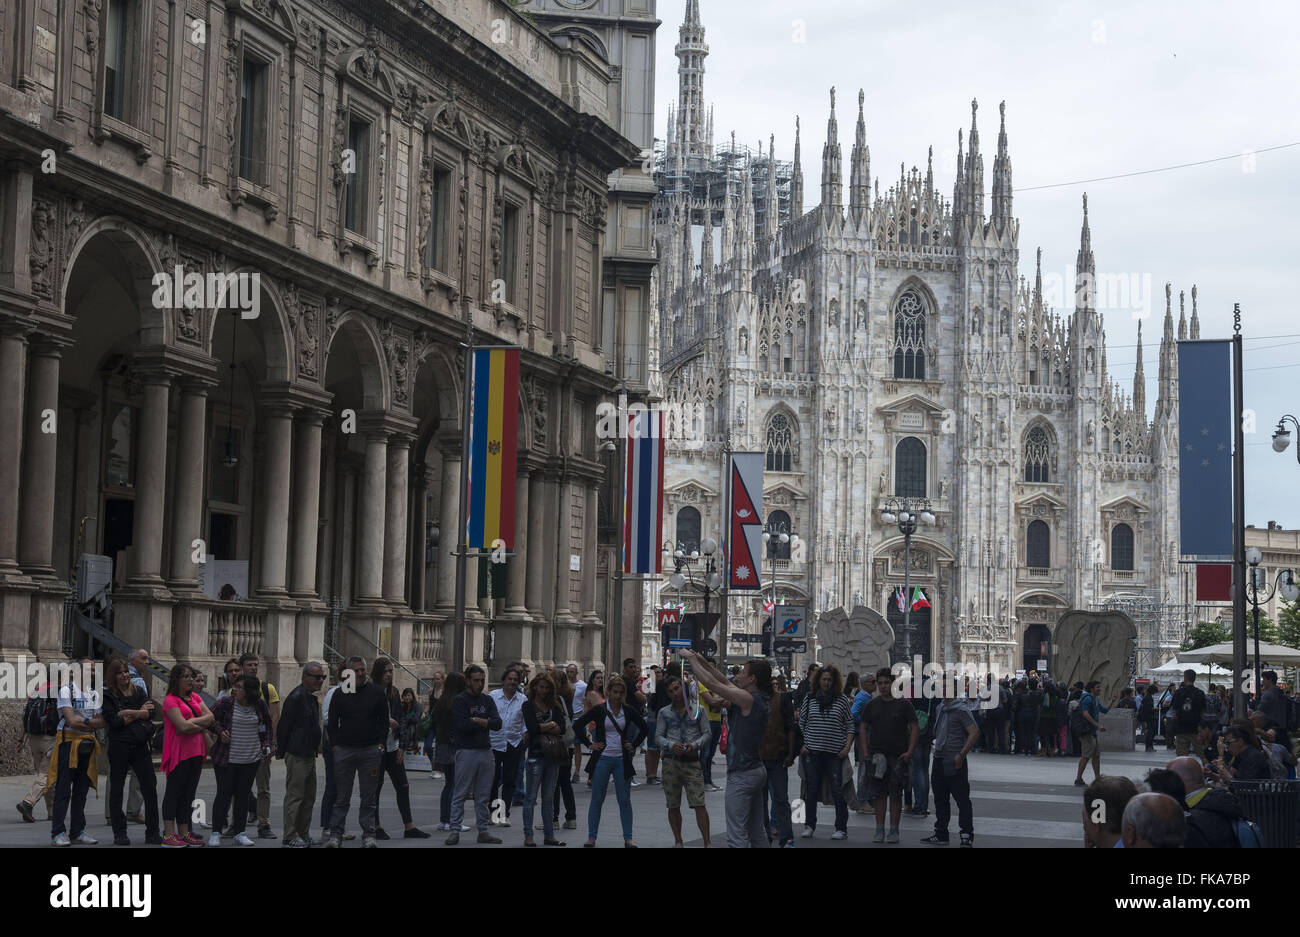 Movimentação de turistas com Catedral de Milão em estilo gótico ao fundo Stock Photo